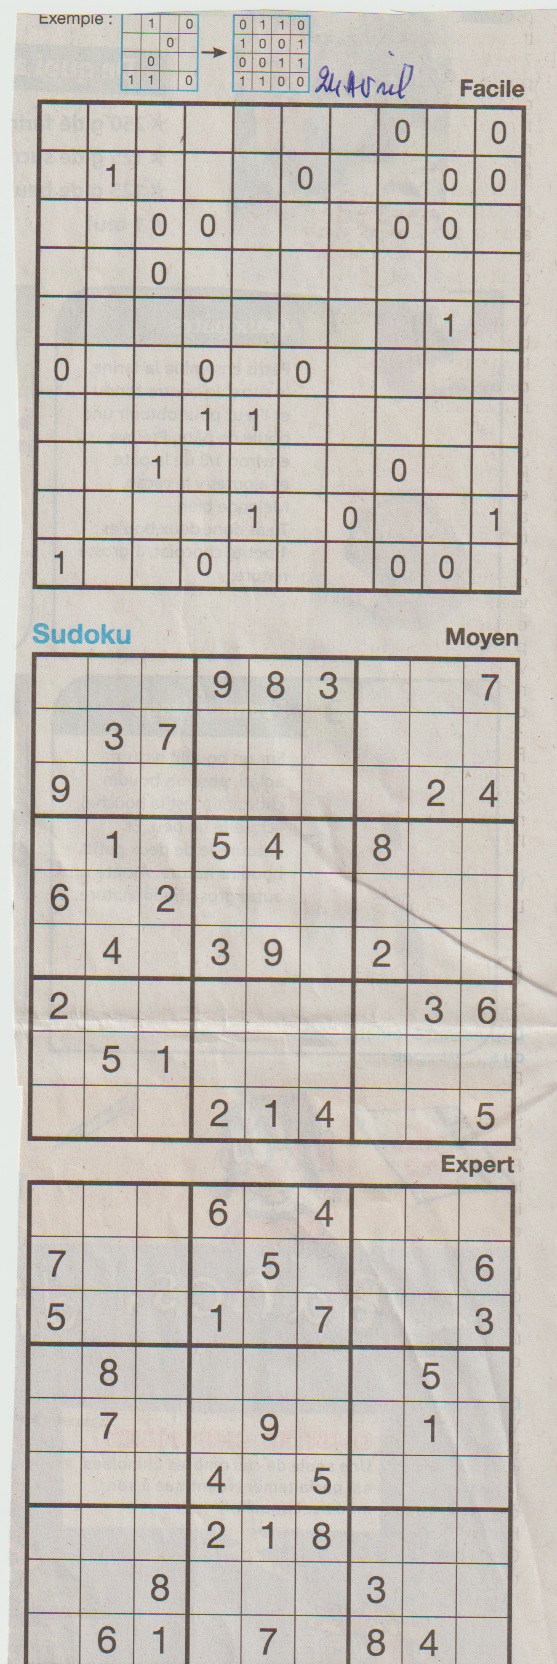 [Jeux] JEUX OUEST FRANCE du 2 Avril 2020 pour passer le temps - Page 2 Sudoku28